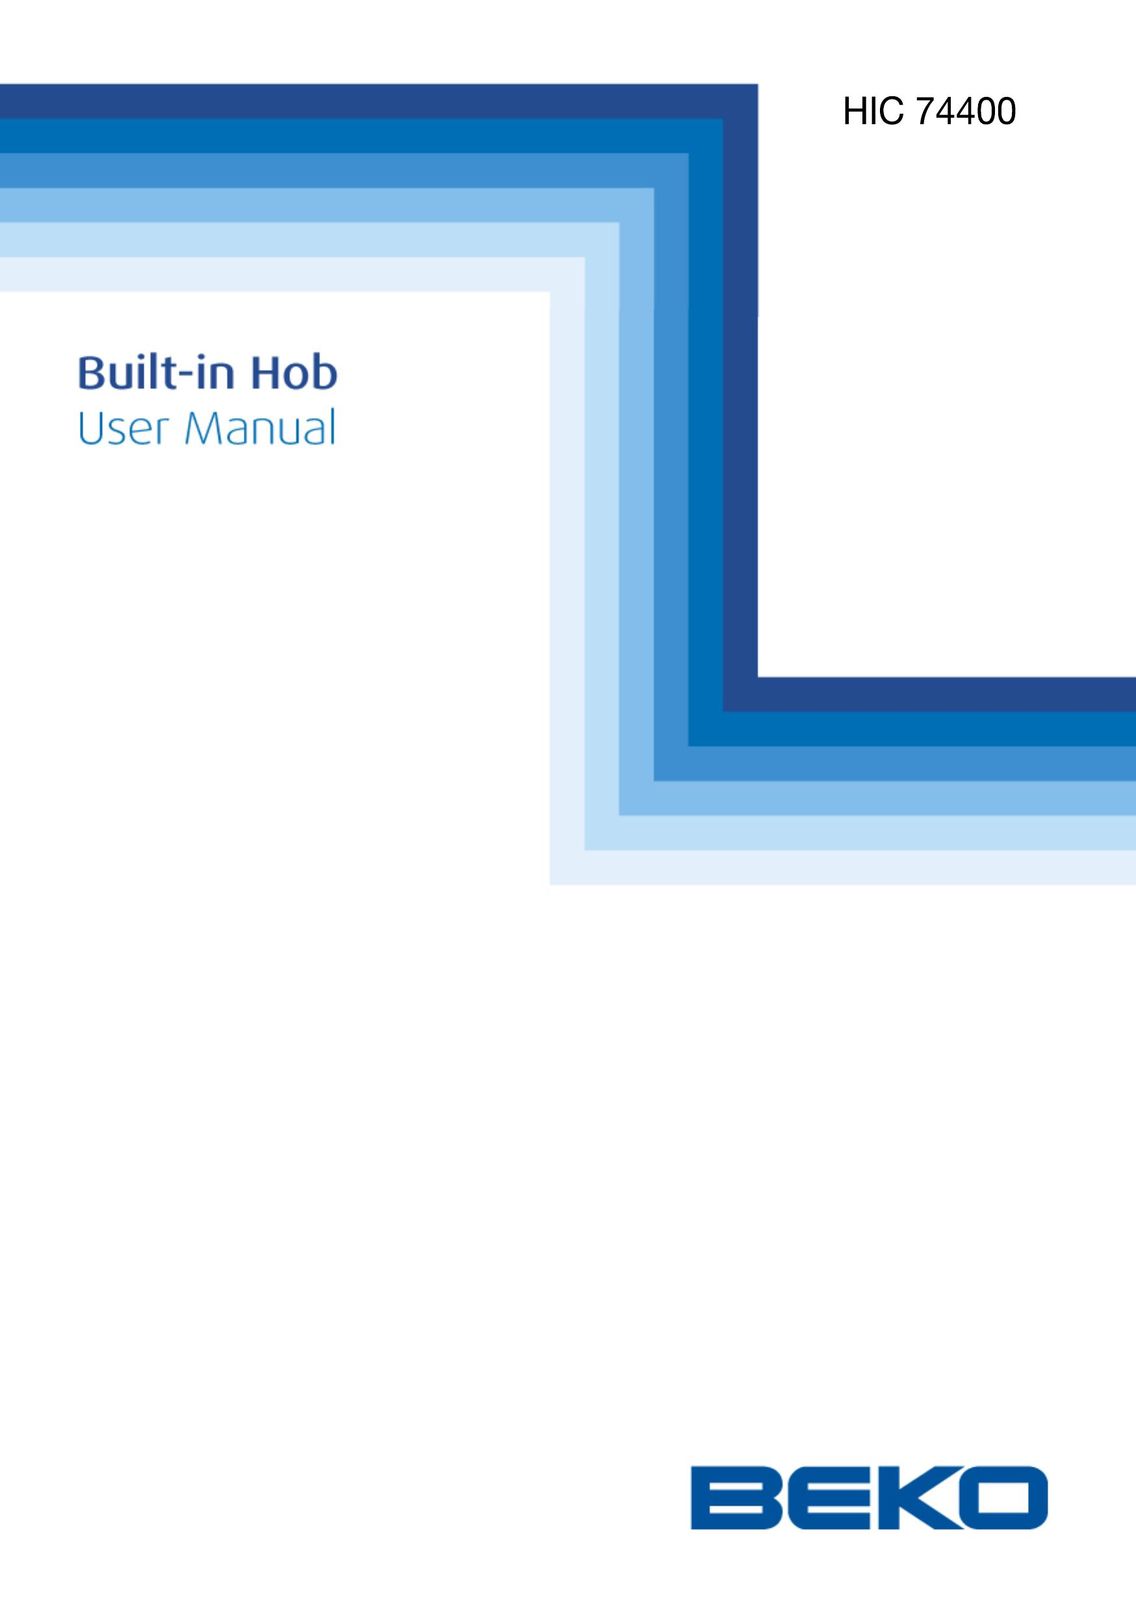 Beko HIC 74400 Cooktop User Manual